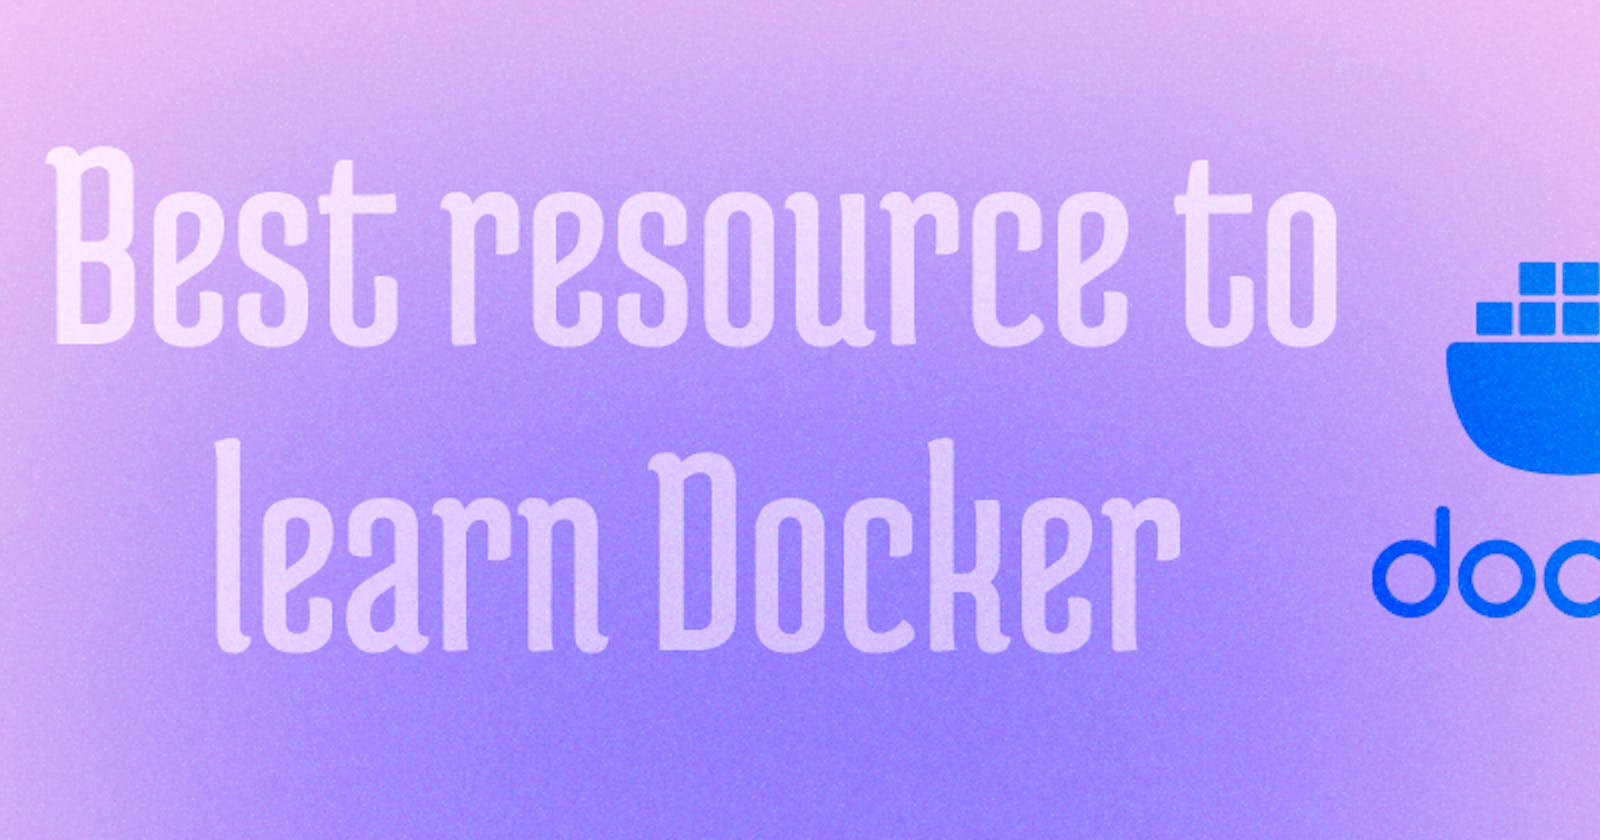 Best resource to learn Docker !